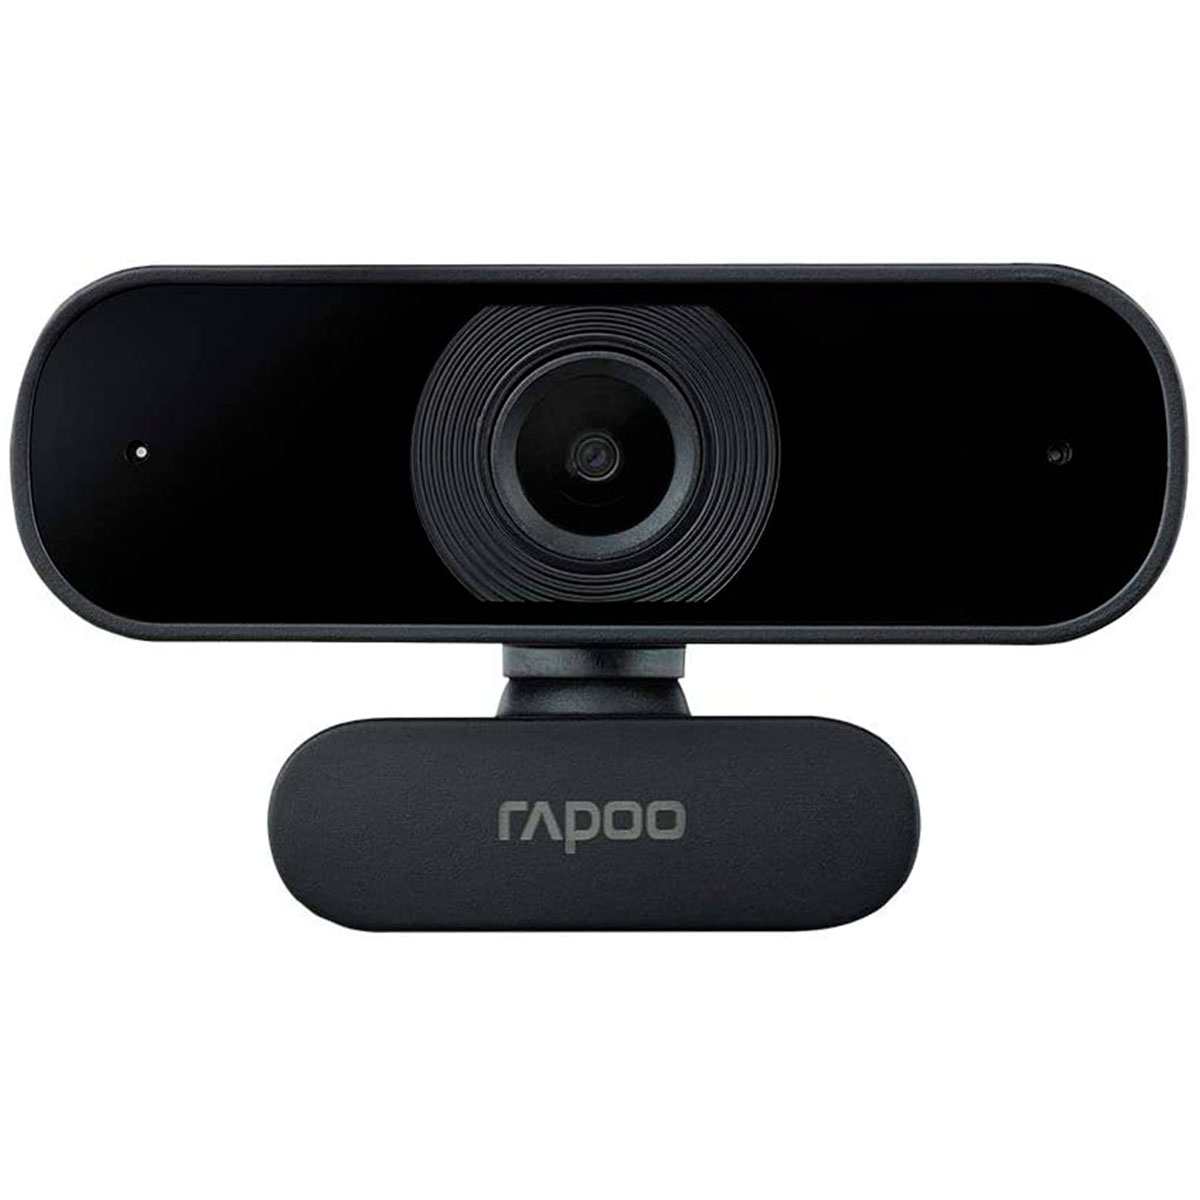 Web Câmera Rapoo C260 - Vídeochamadas em Full HD 1080p - com Microfone - Auto Foco - RA021